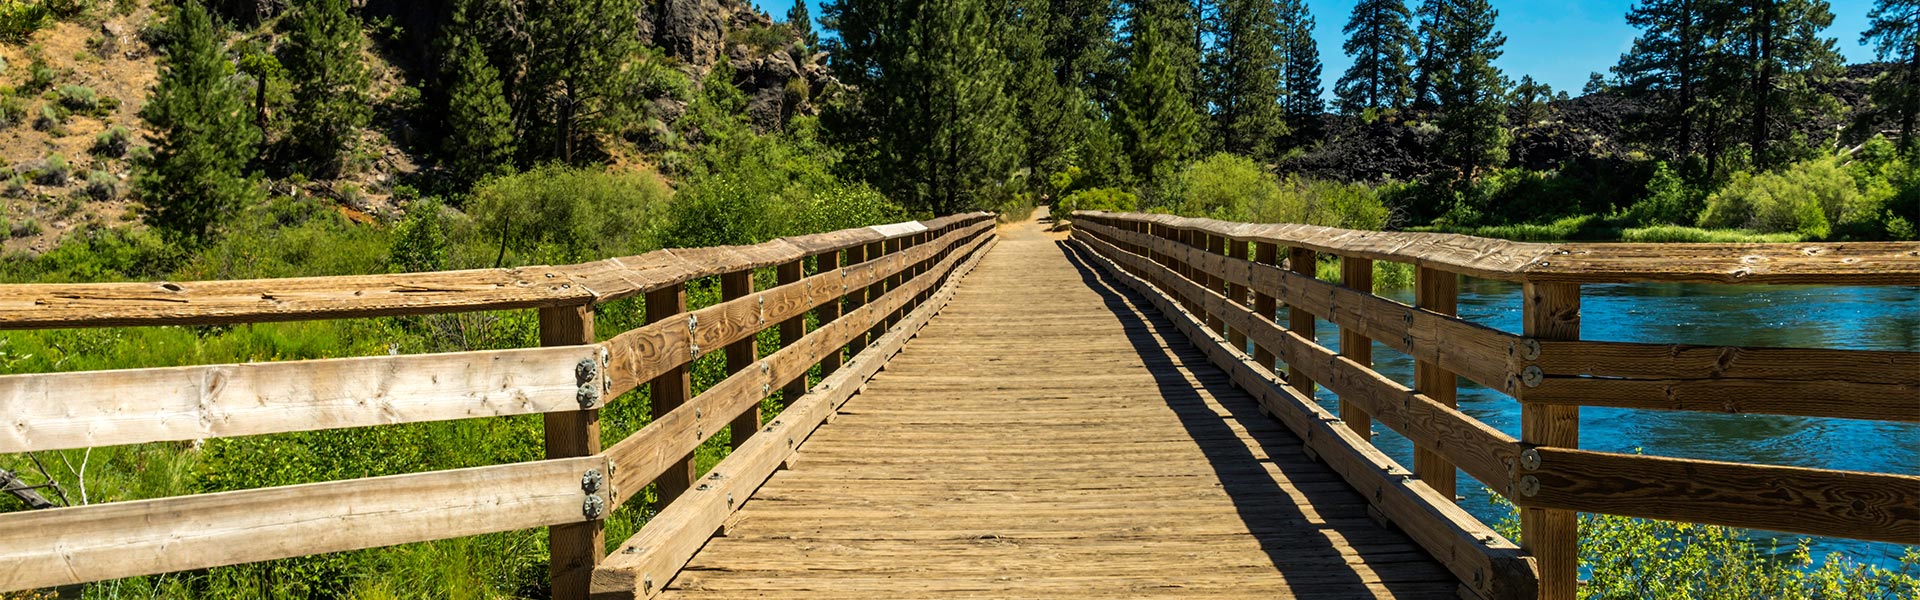 Central Oregon bridge on the Deschutes